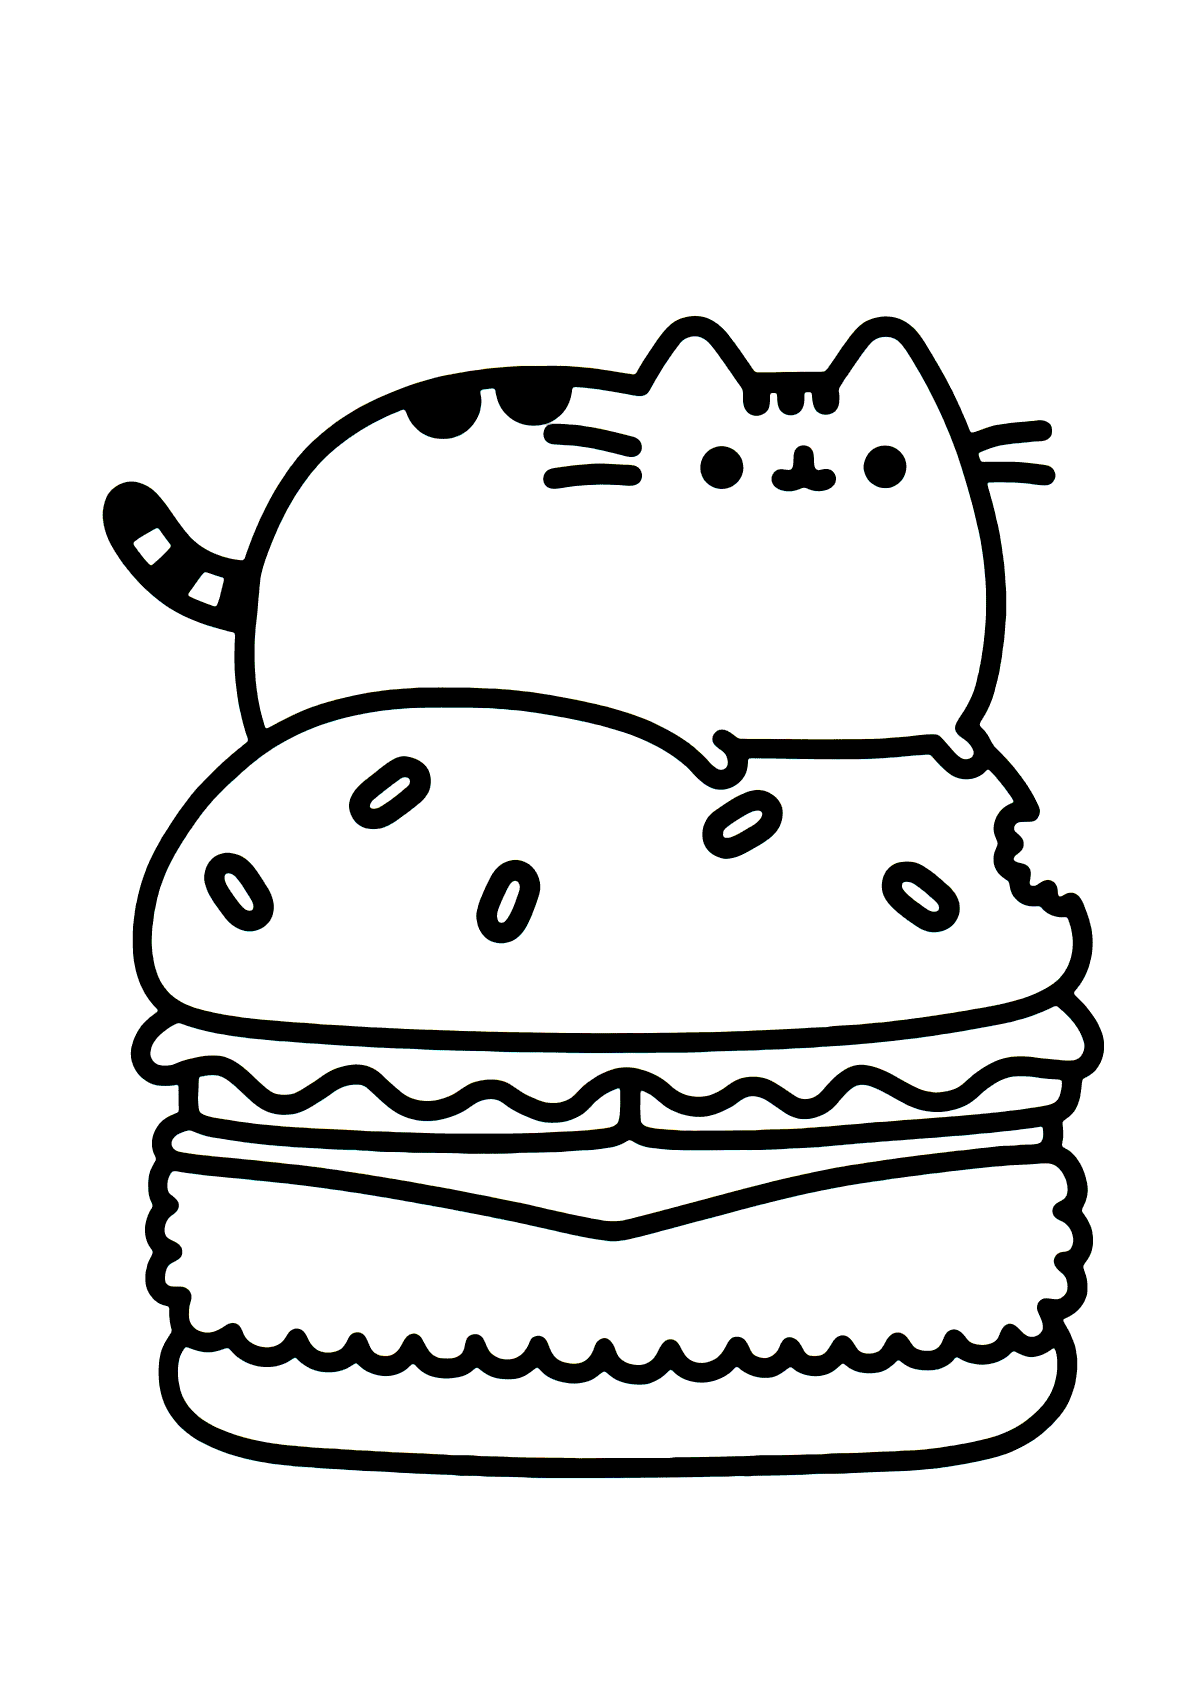 Desenho de gato kawaii para colorir